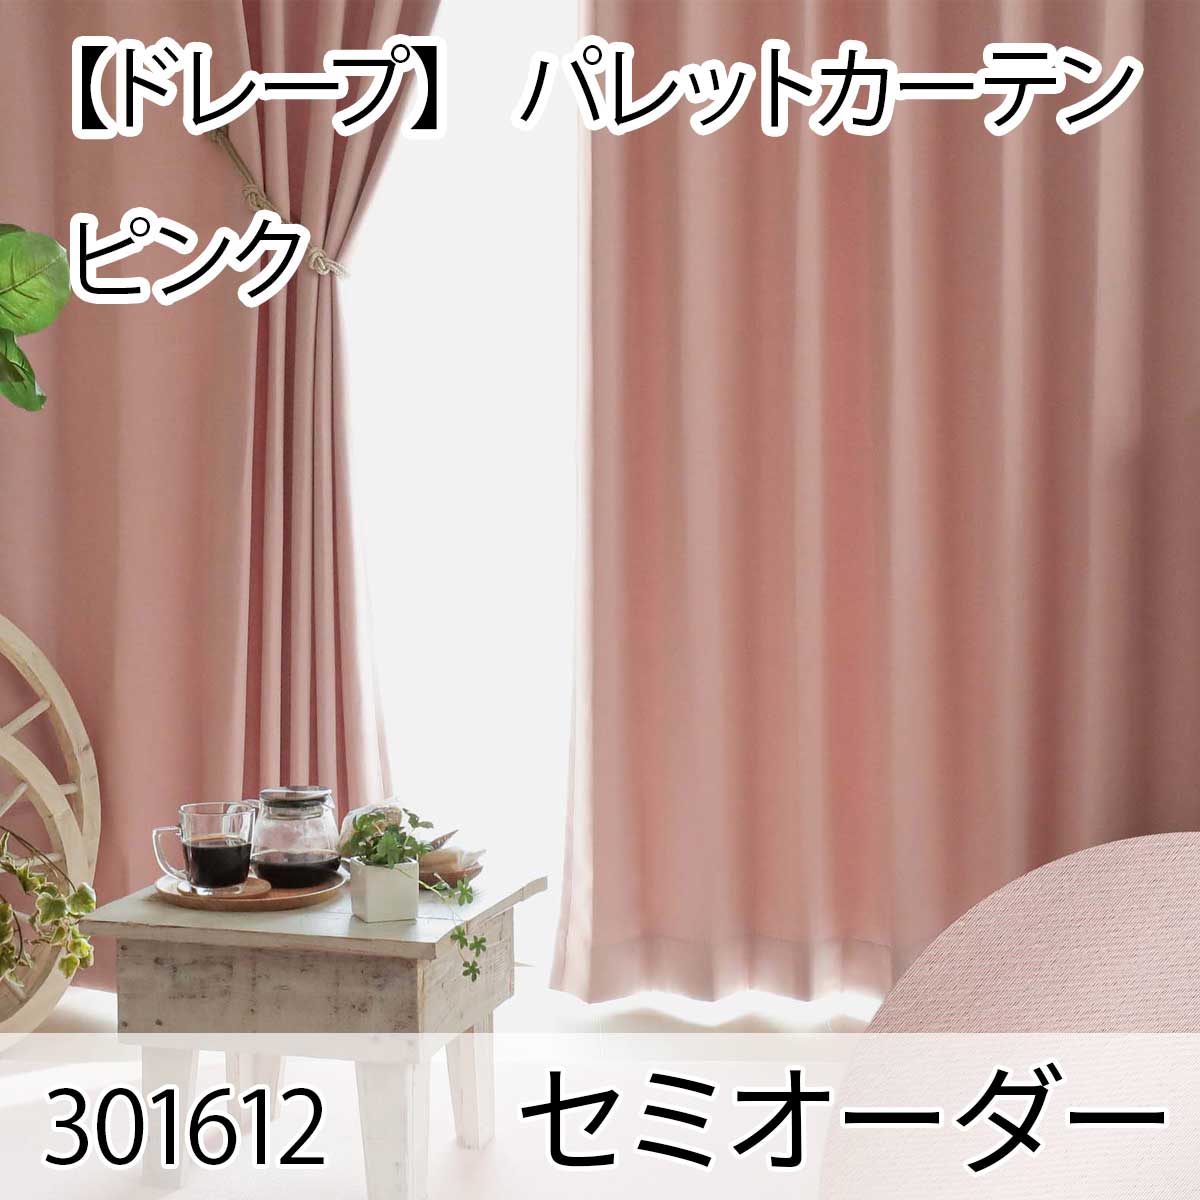 【ドレープ】 パレットカーテン ピンク セミオーダー